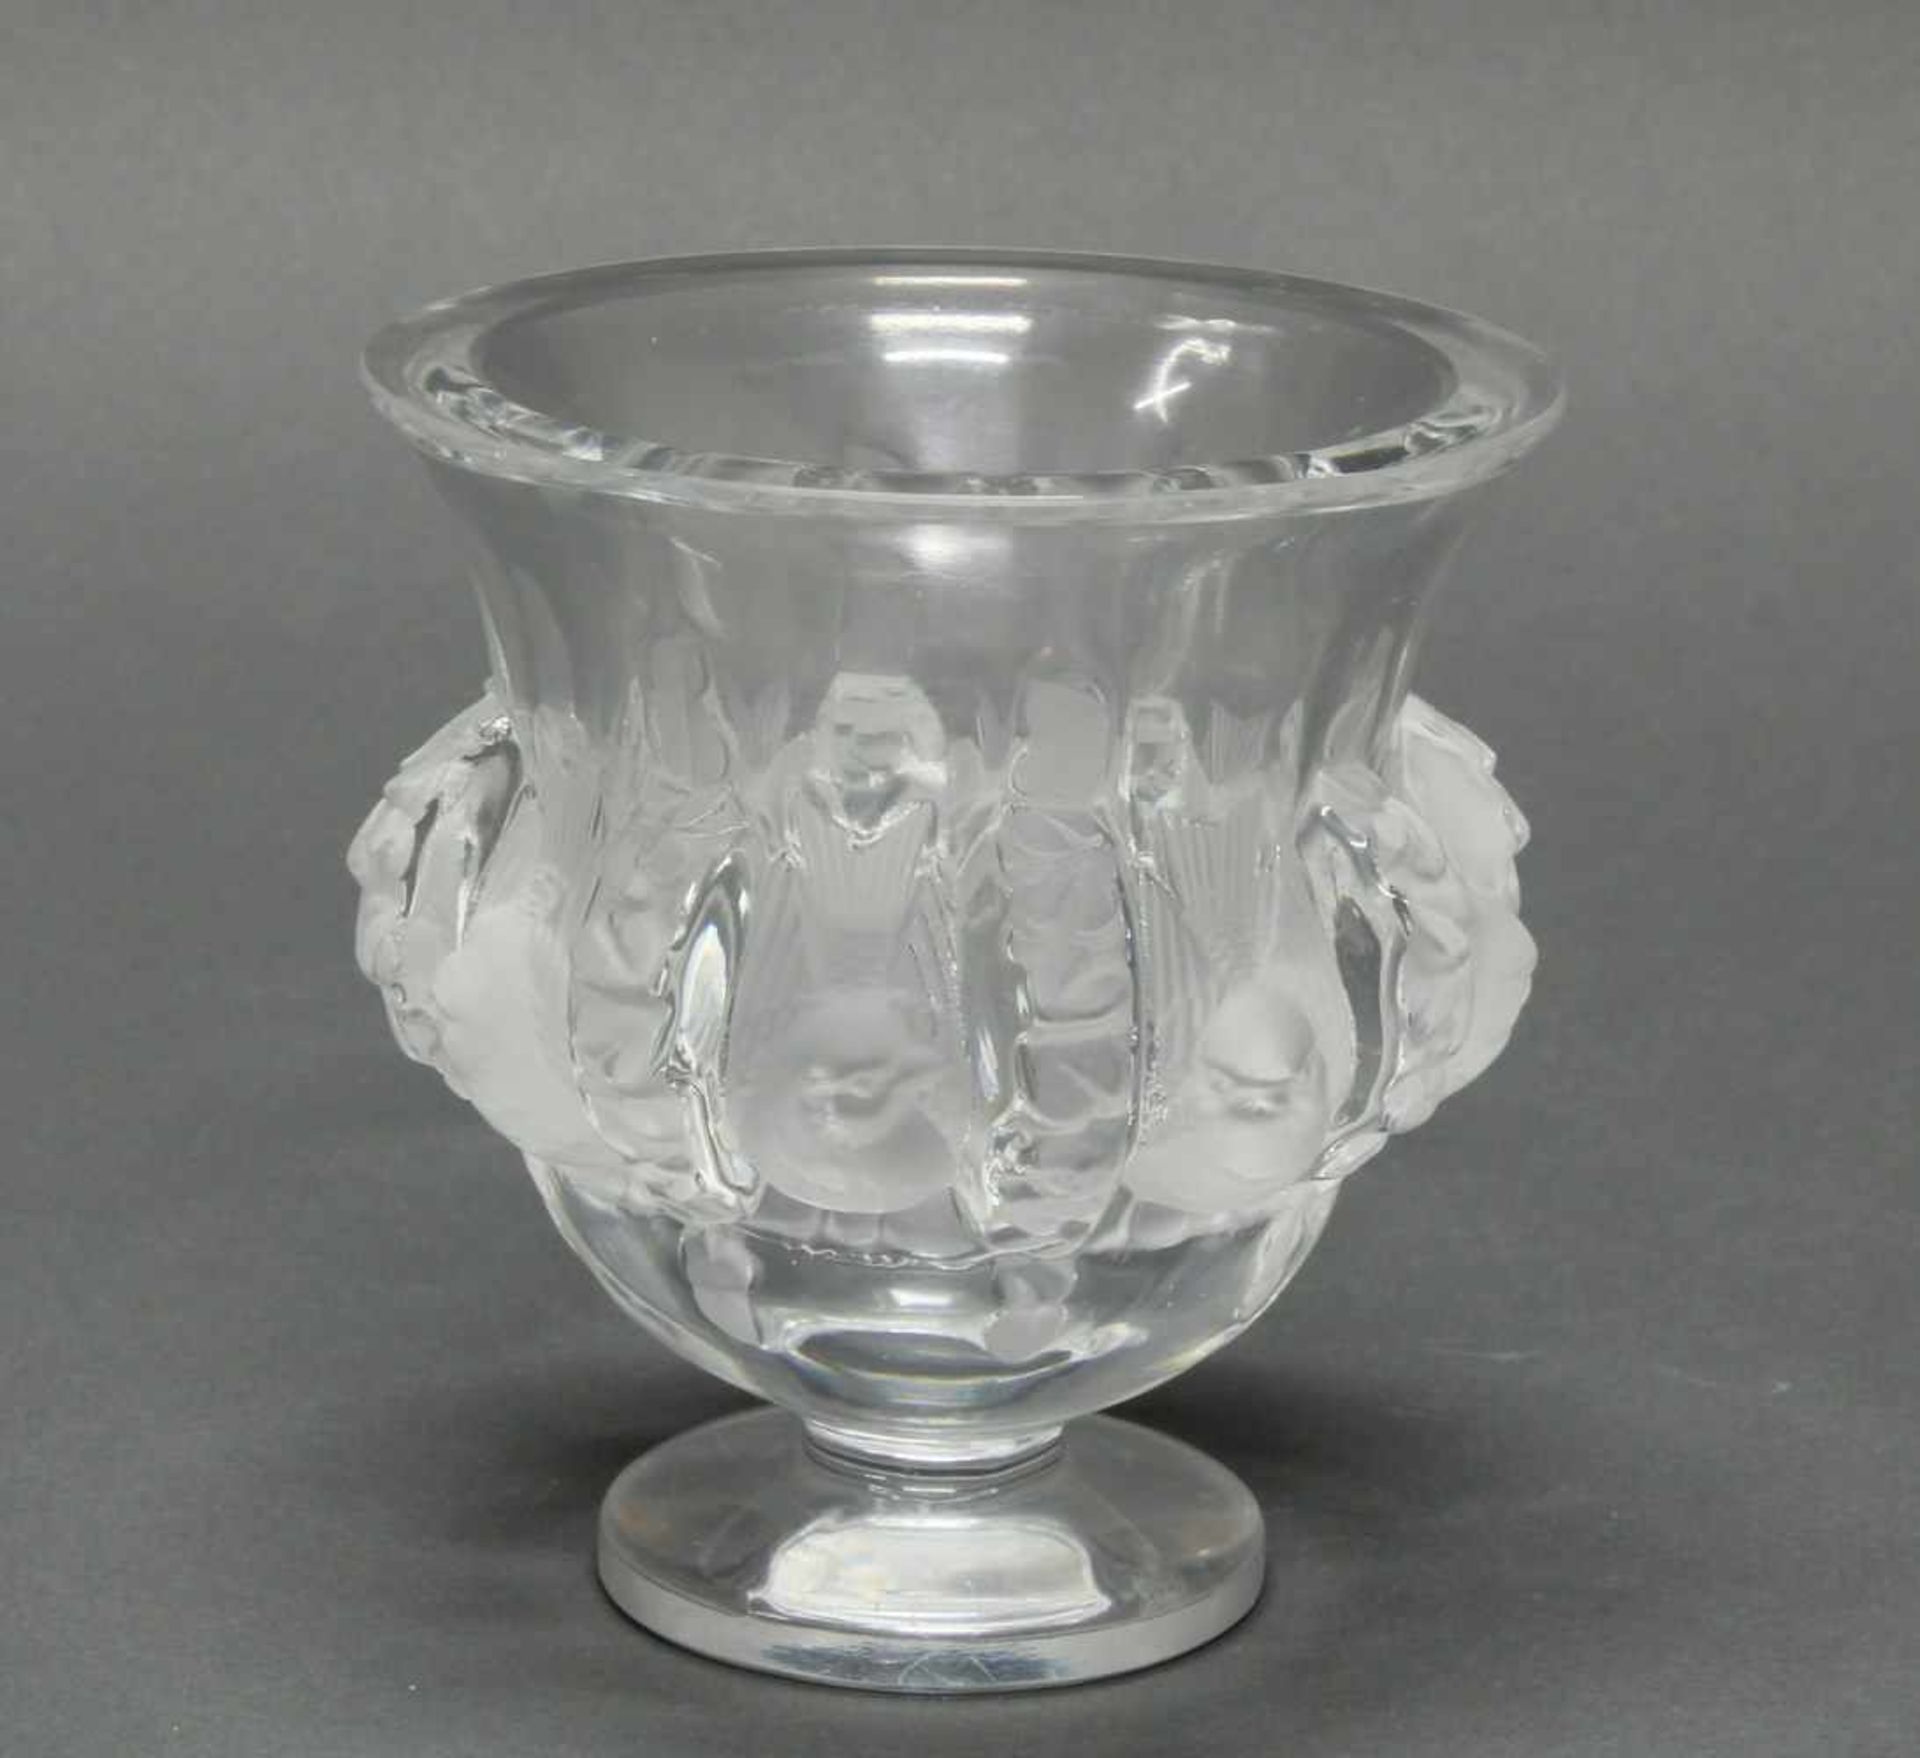 Vase, "Dampierre", Lalique, farbloses Glas, teils mattiert, am Boden umseitig bezeichnet Lalique